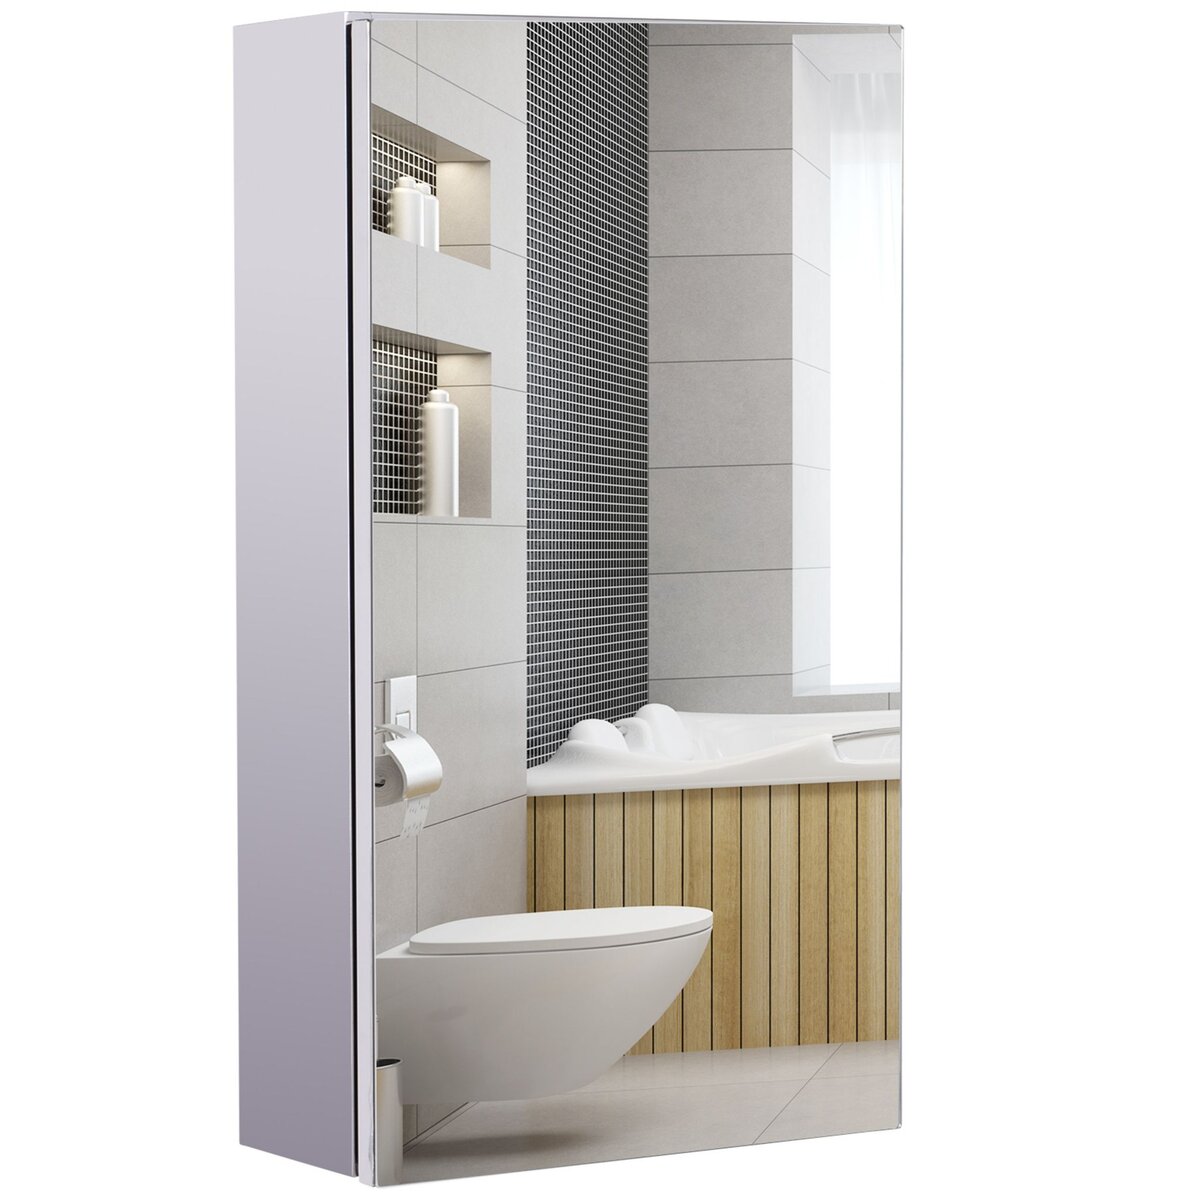 Armoire miroir 2 portes 2 étagères - rangement toilette salle de bain -  meuble mural acier inox.